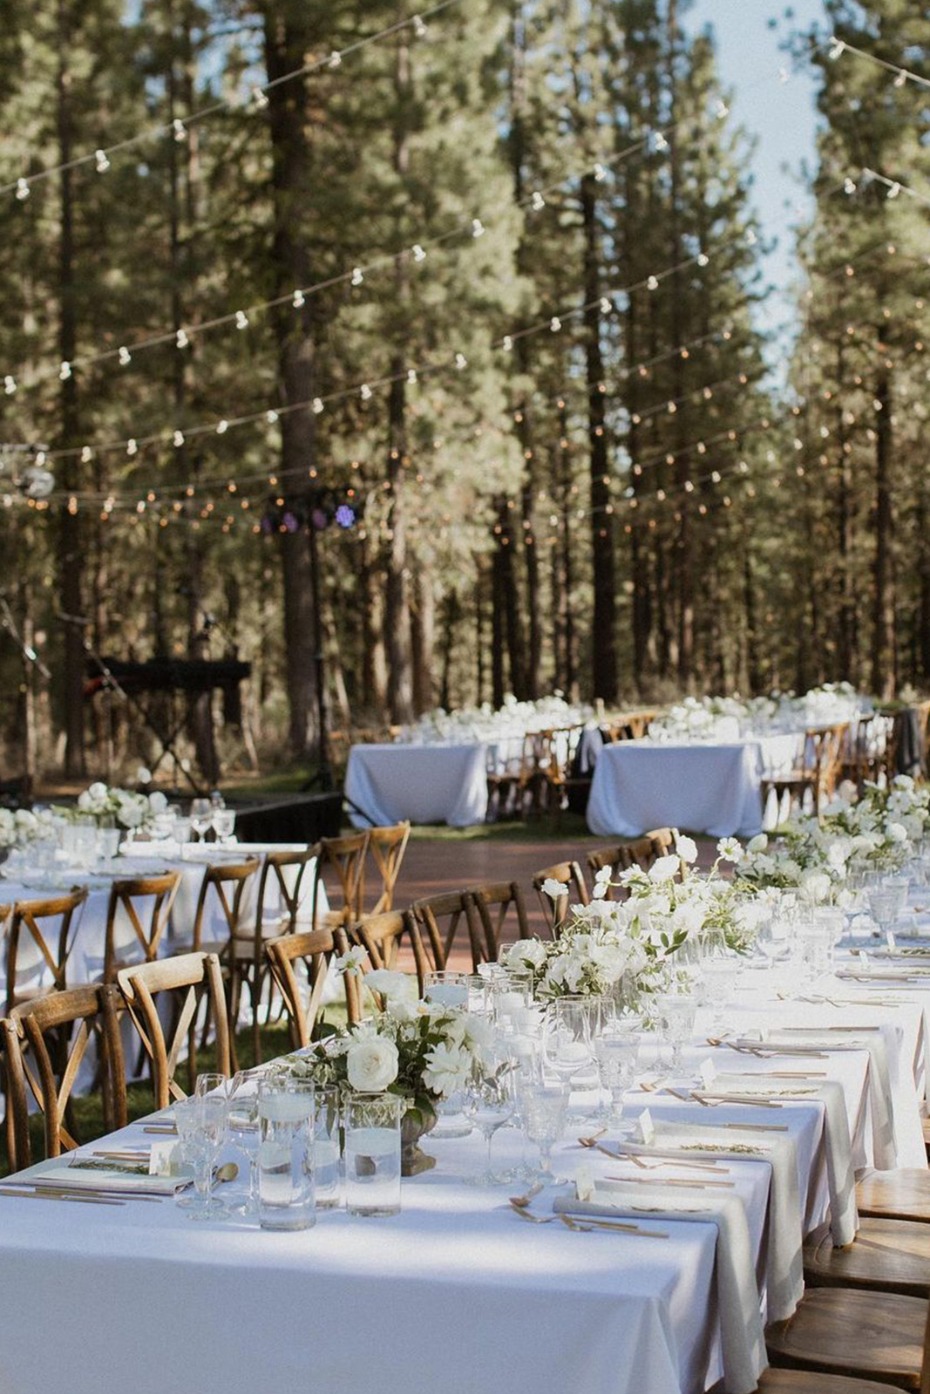 15 Picturesque Outdoor Wedding Venues